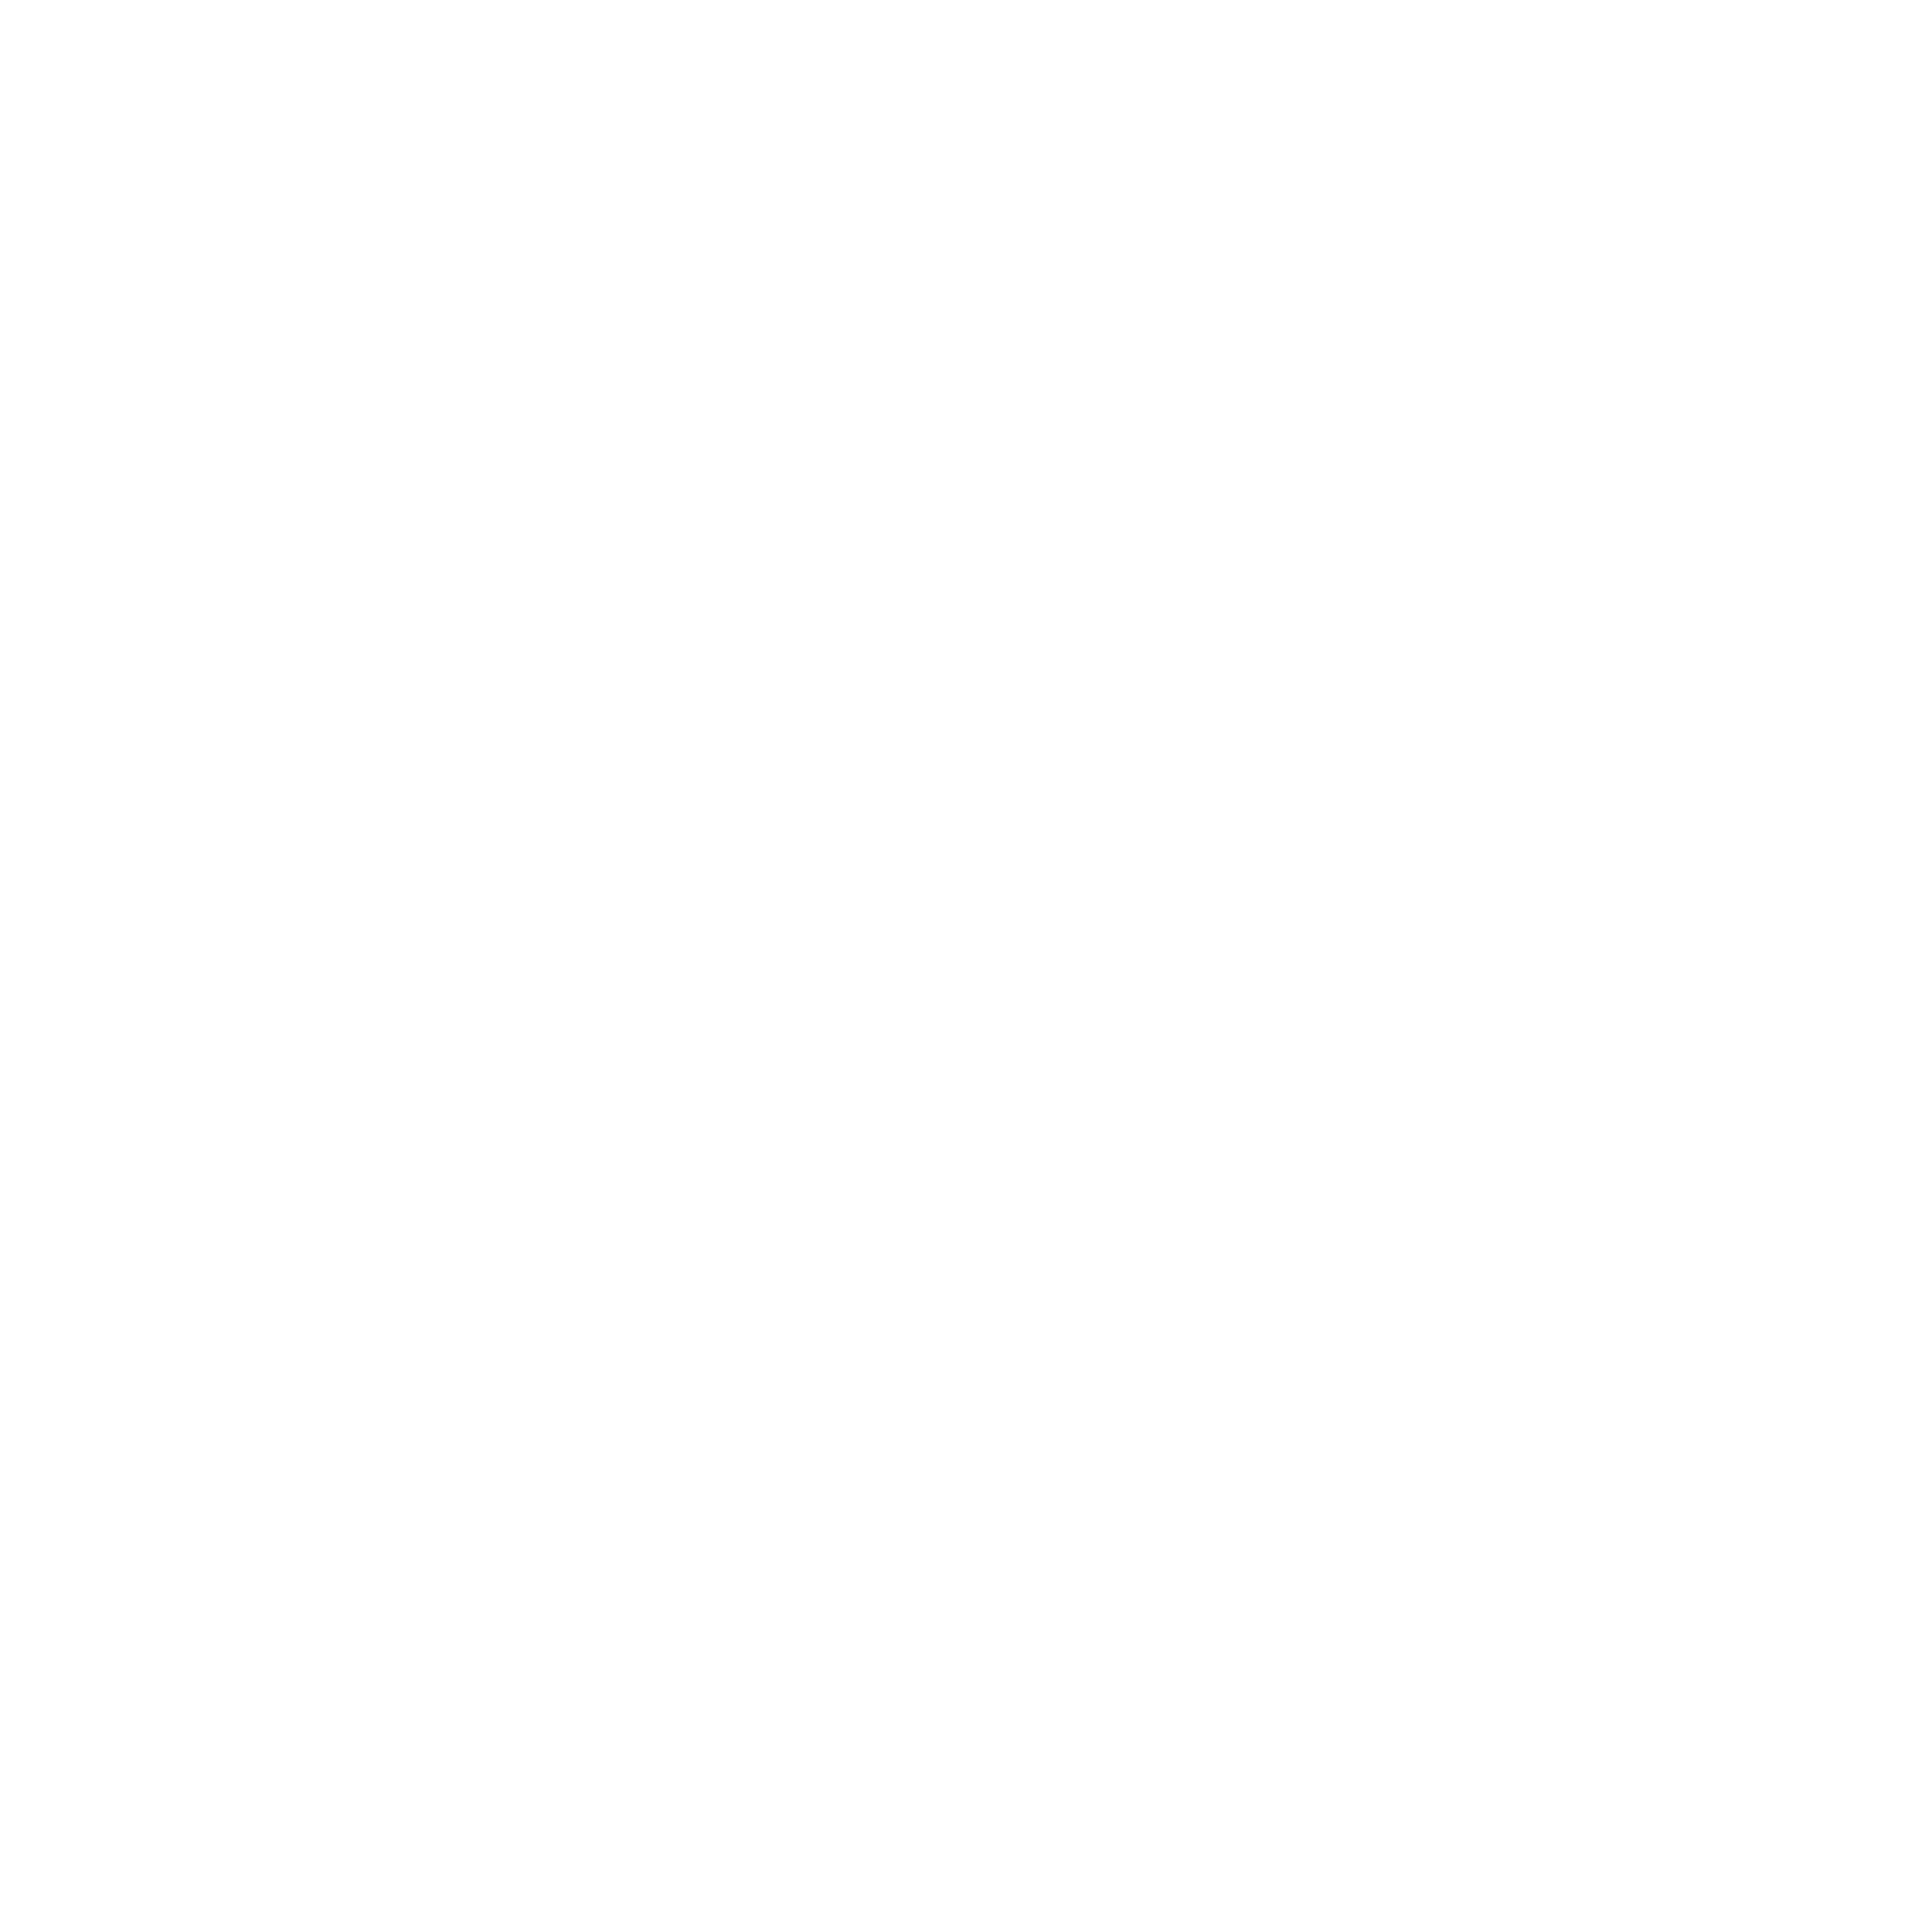 Logo Arome Et Sens Blanc